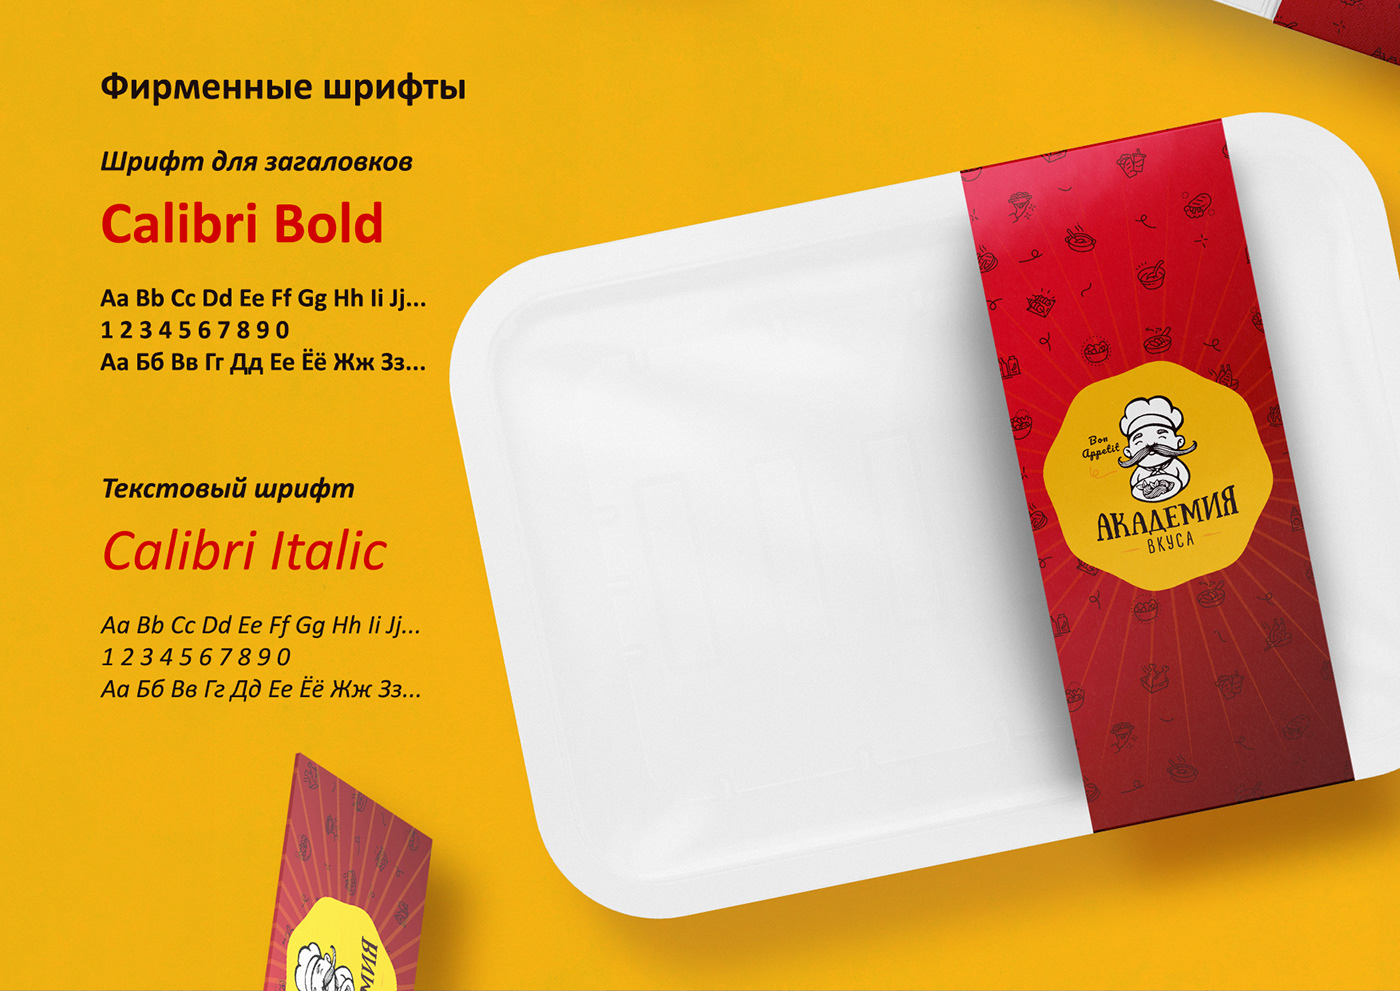 brendbook Food  identity visual айдентика брендинг графический дизайн дизайн логотип фирменный стиль